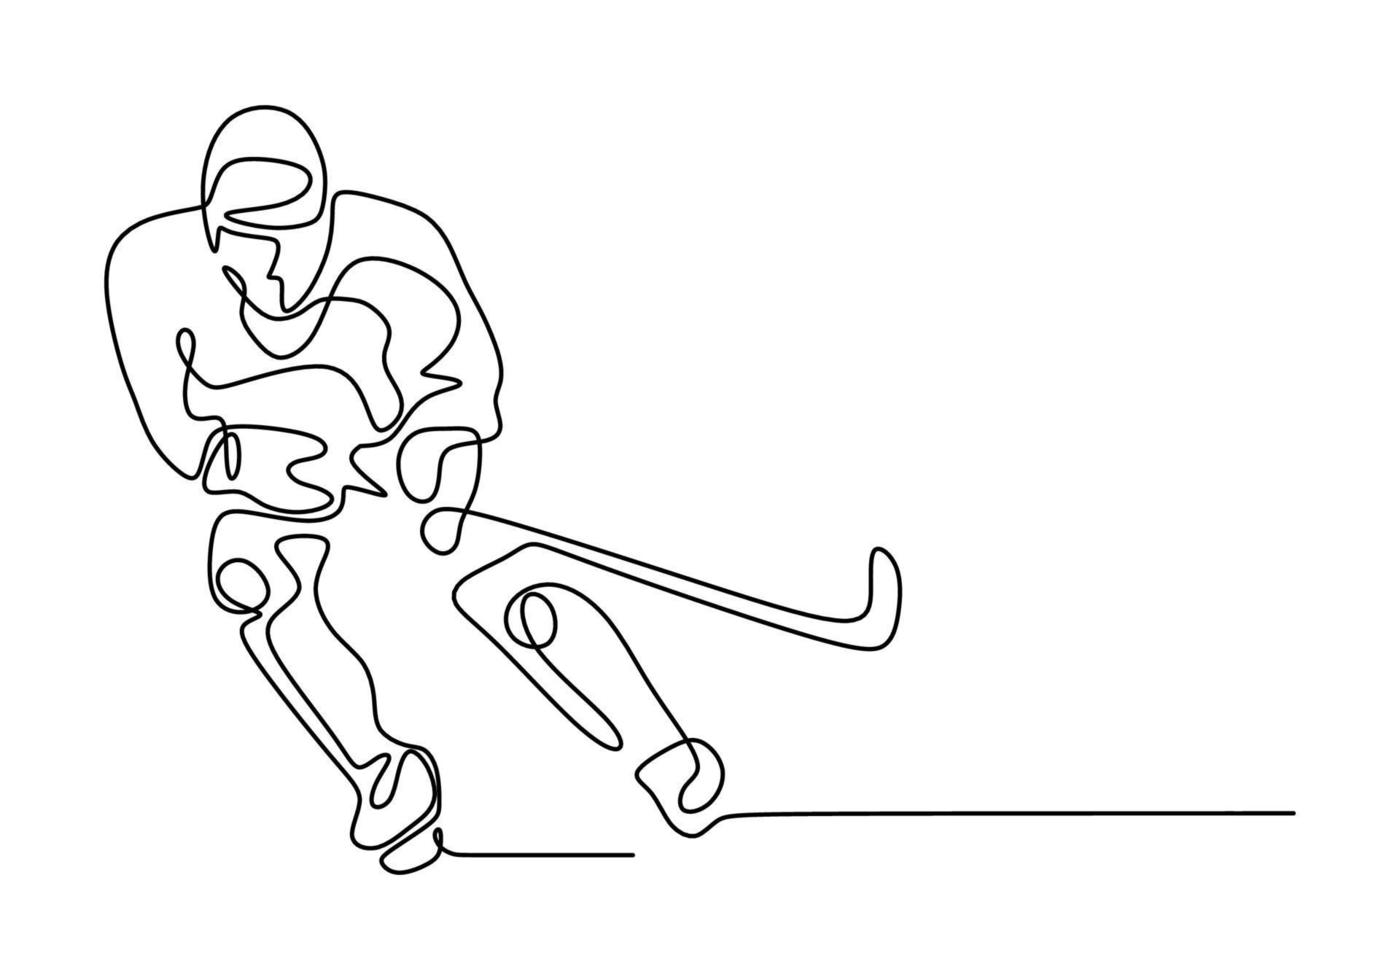 Mann, der Eishockeysport spielt. durchgehende Strichzeichnung vektor